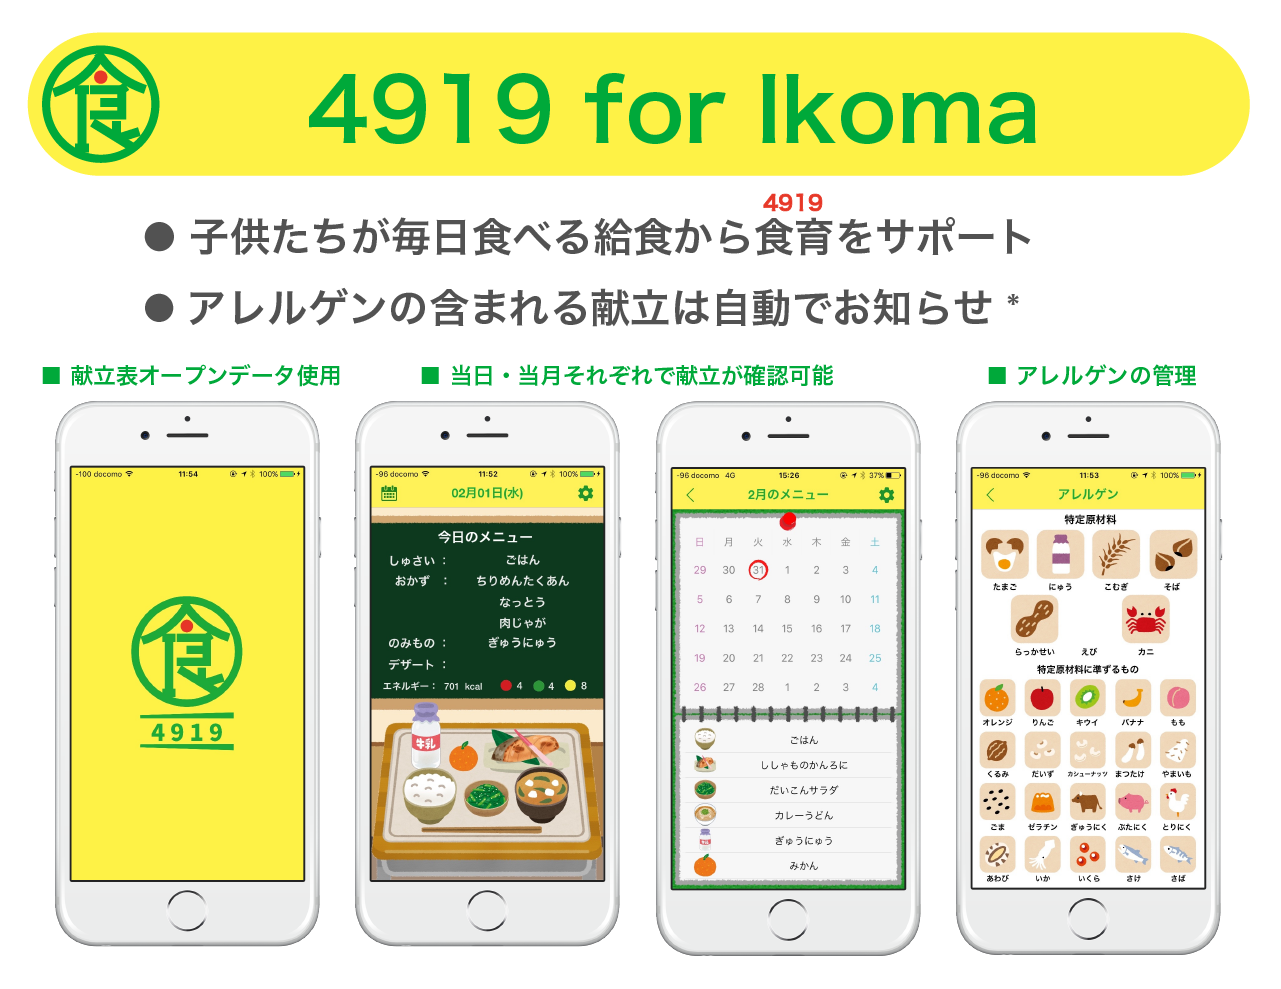 4919 for Ikoma